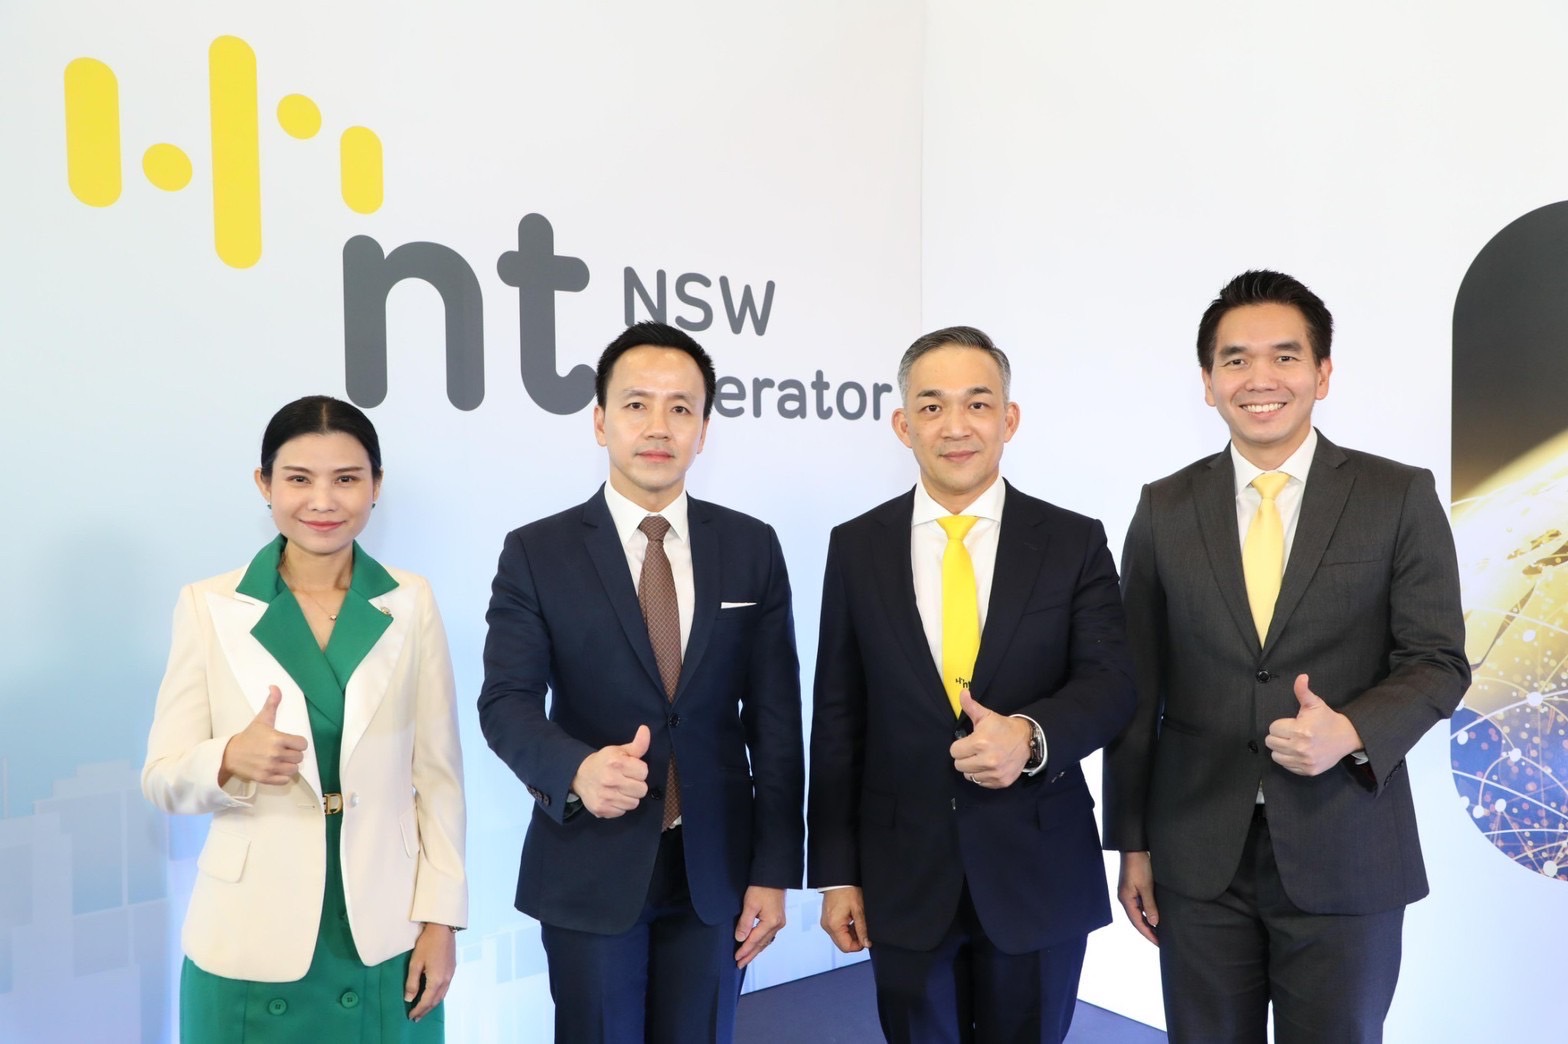 NT เปิดให้บริการระบบ NSW พร้อมเชื่อมโยงข้อมูลภาครัฐและภาคธุรกิจ ตอบโจทย์ผู้ประกอบการนำเข้า ส่งออก และโลจิสติกส์